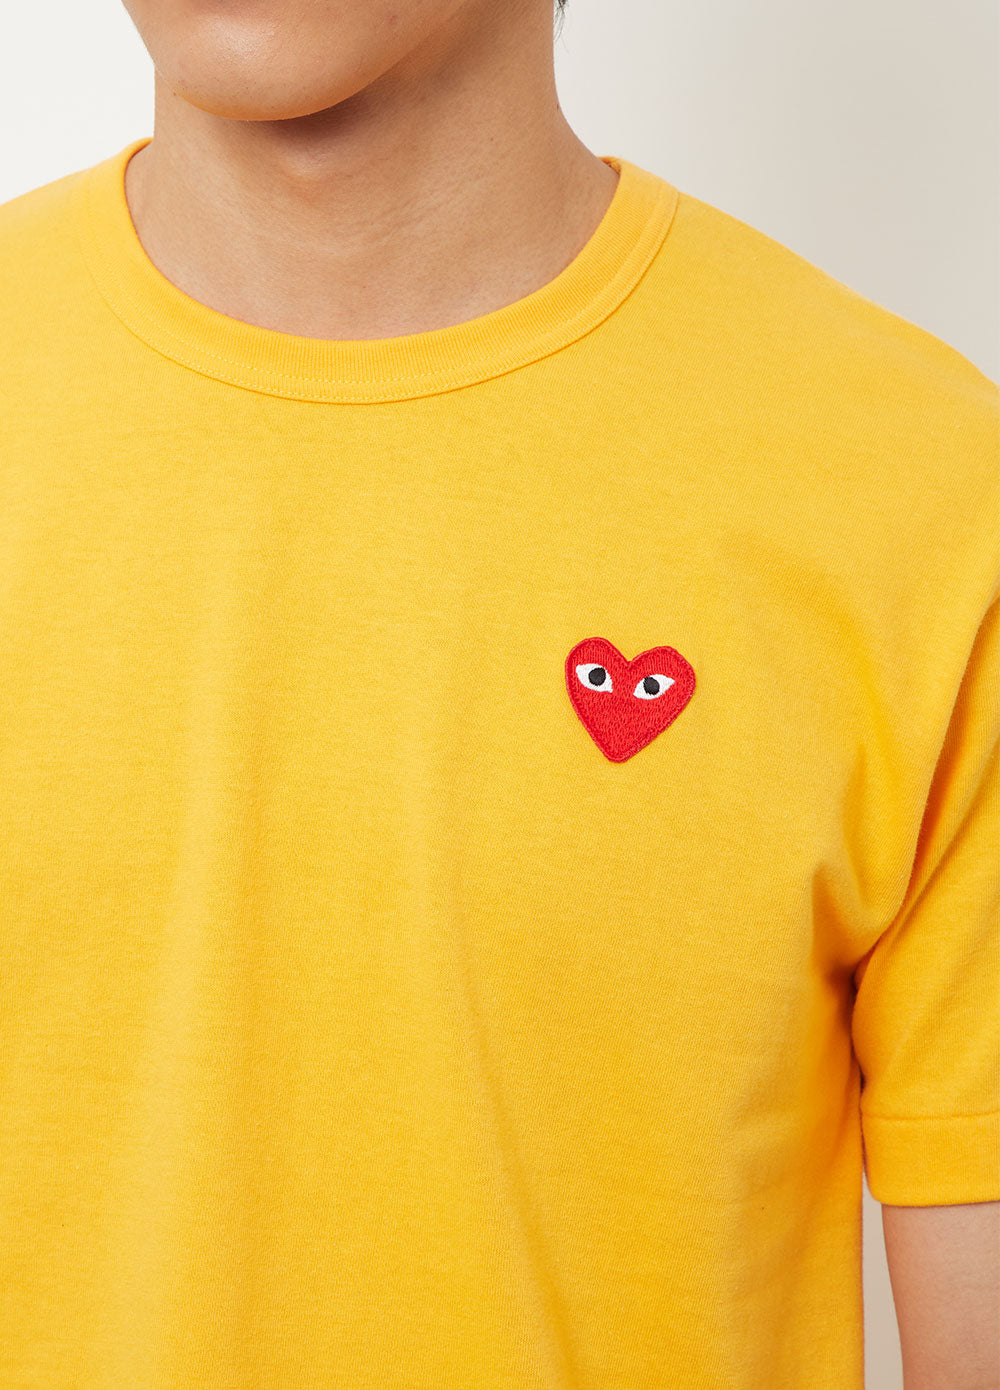 T212 Red Heart T-Shirt